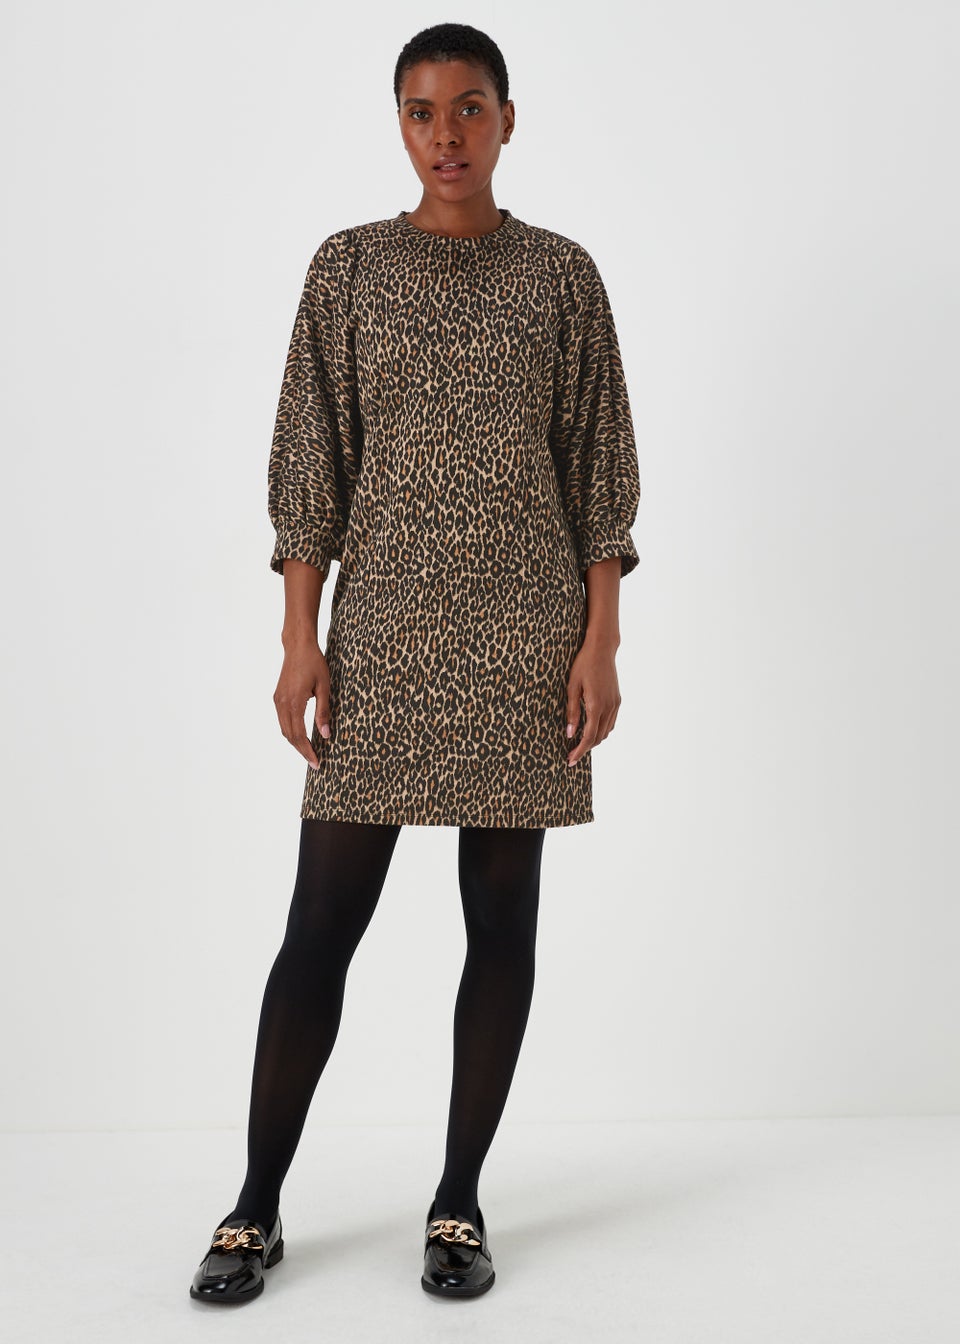 Светло-коричневое жаккардовое платье с леопардовым принтом Papaya платье intimissimi коричневое 44 размер